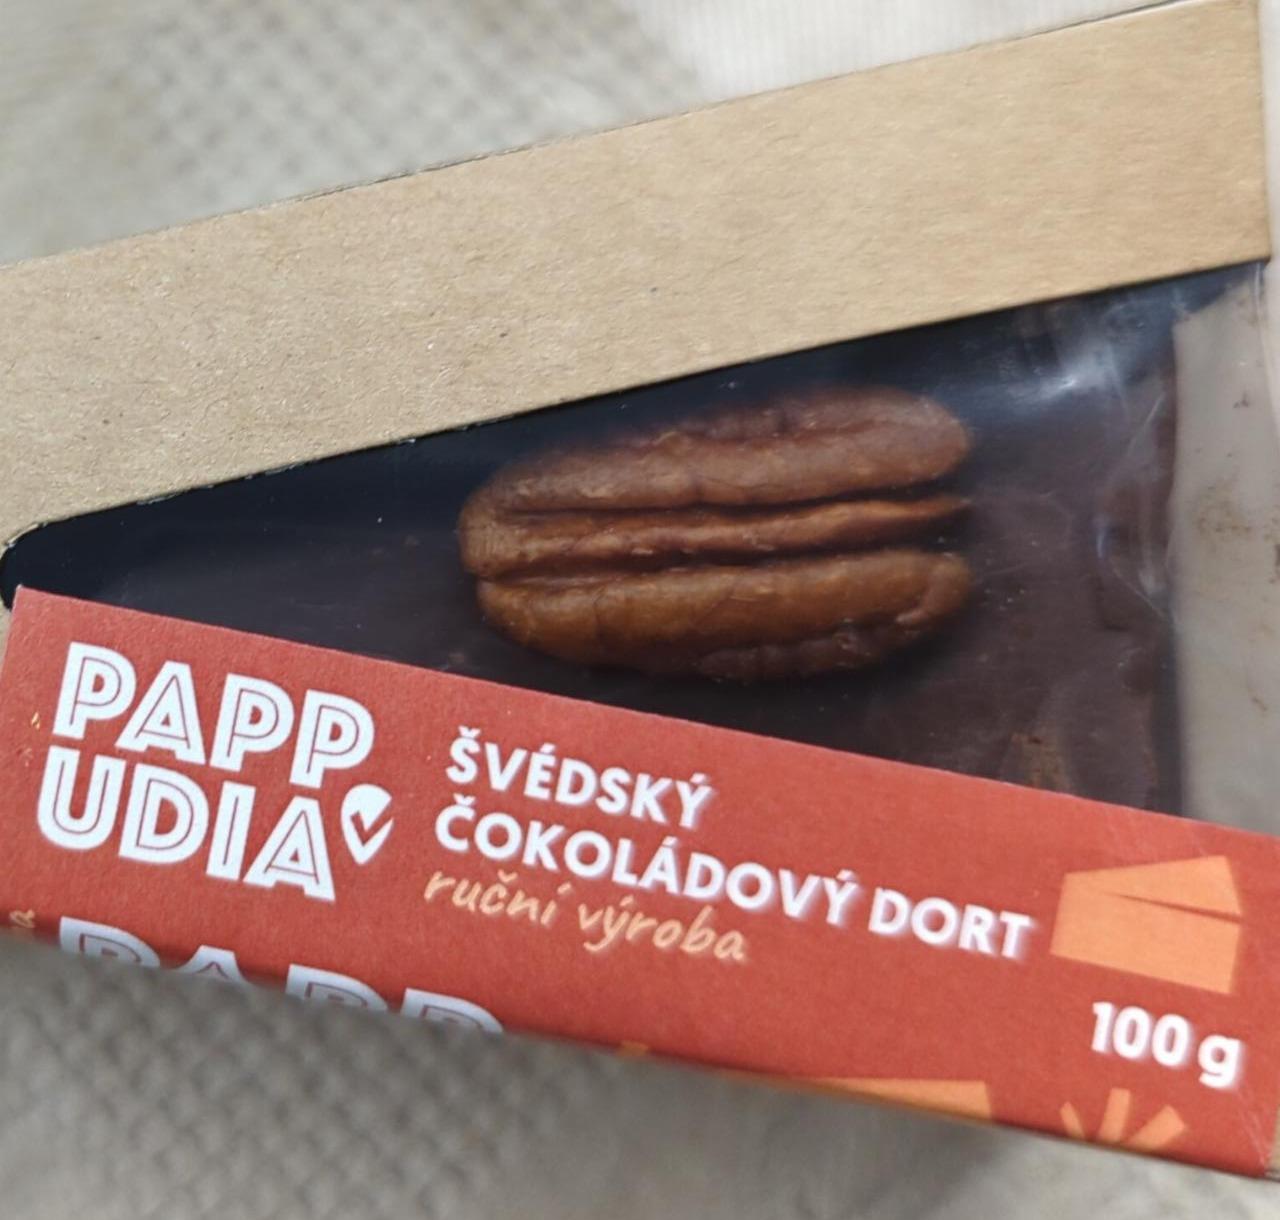 Fotografie - Švédský čokoládový dort Pappudia